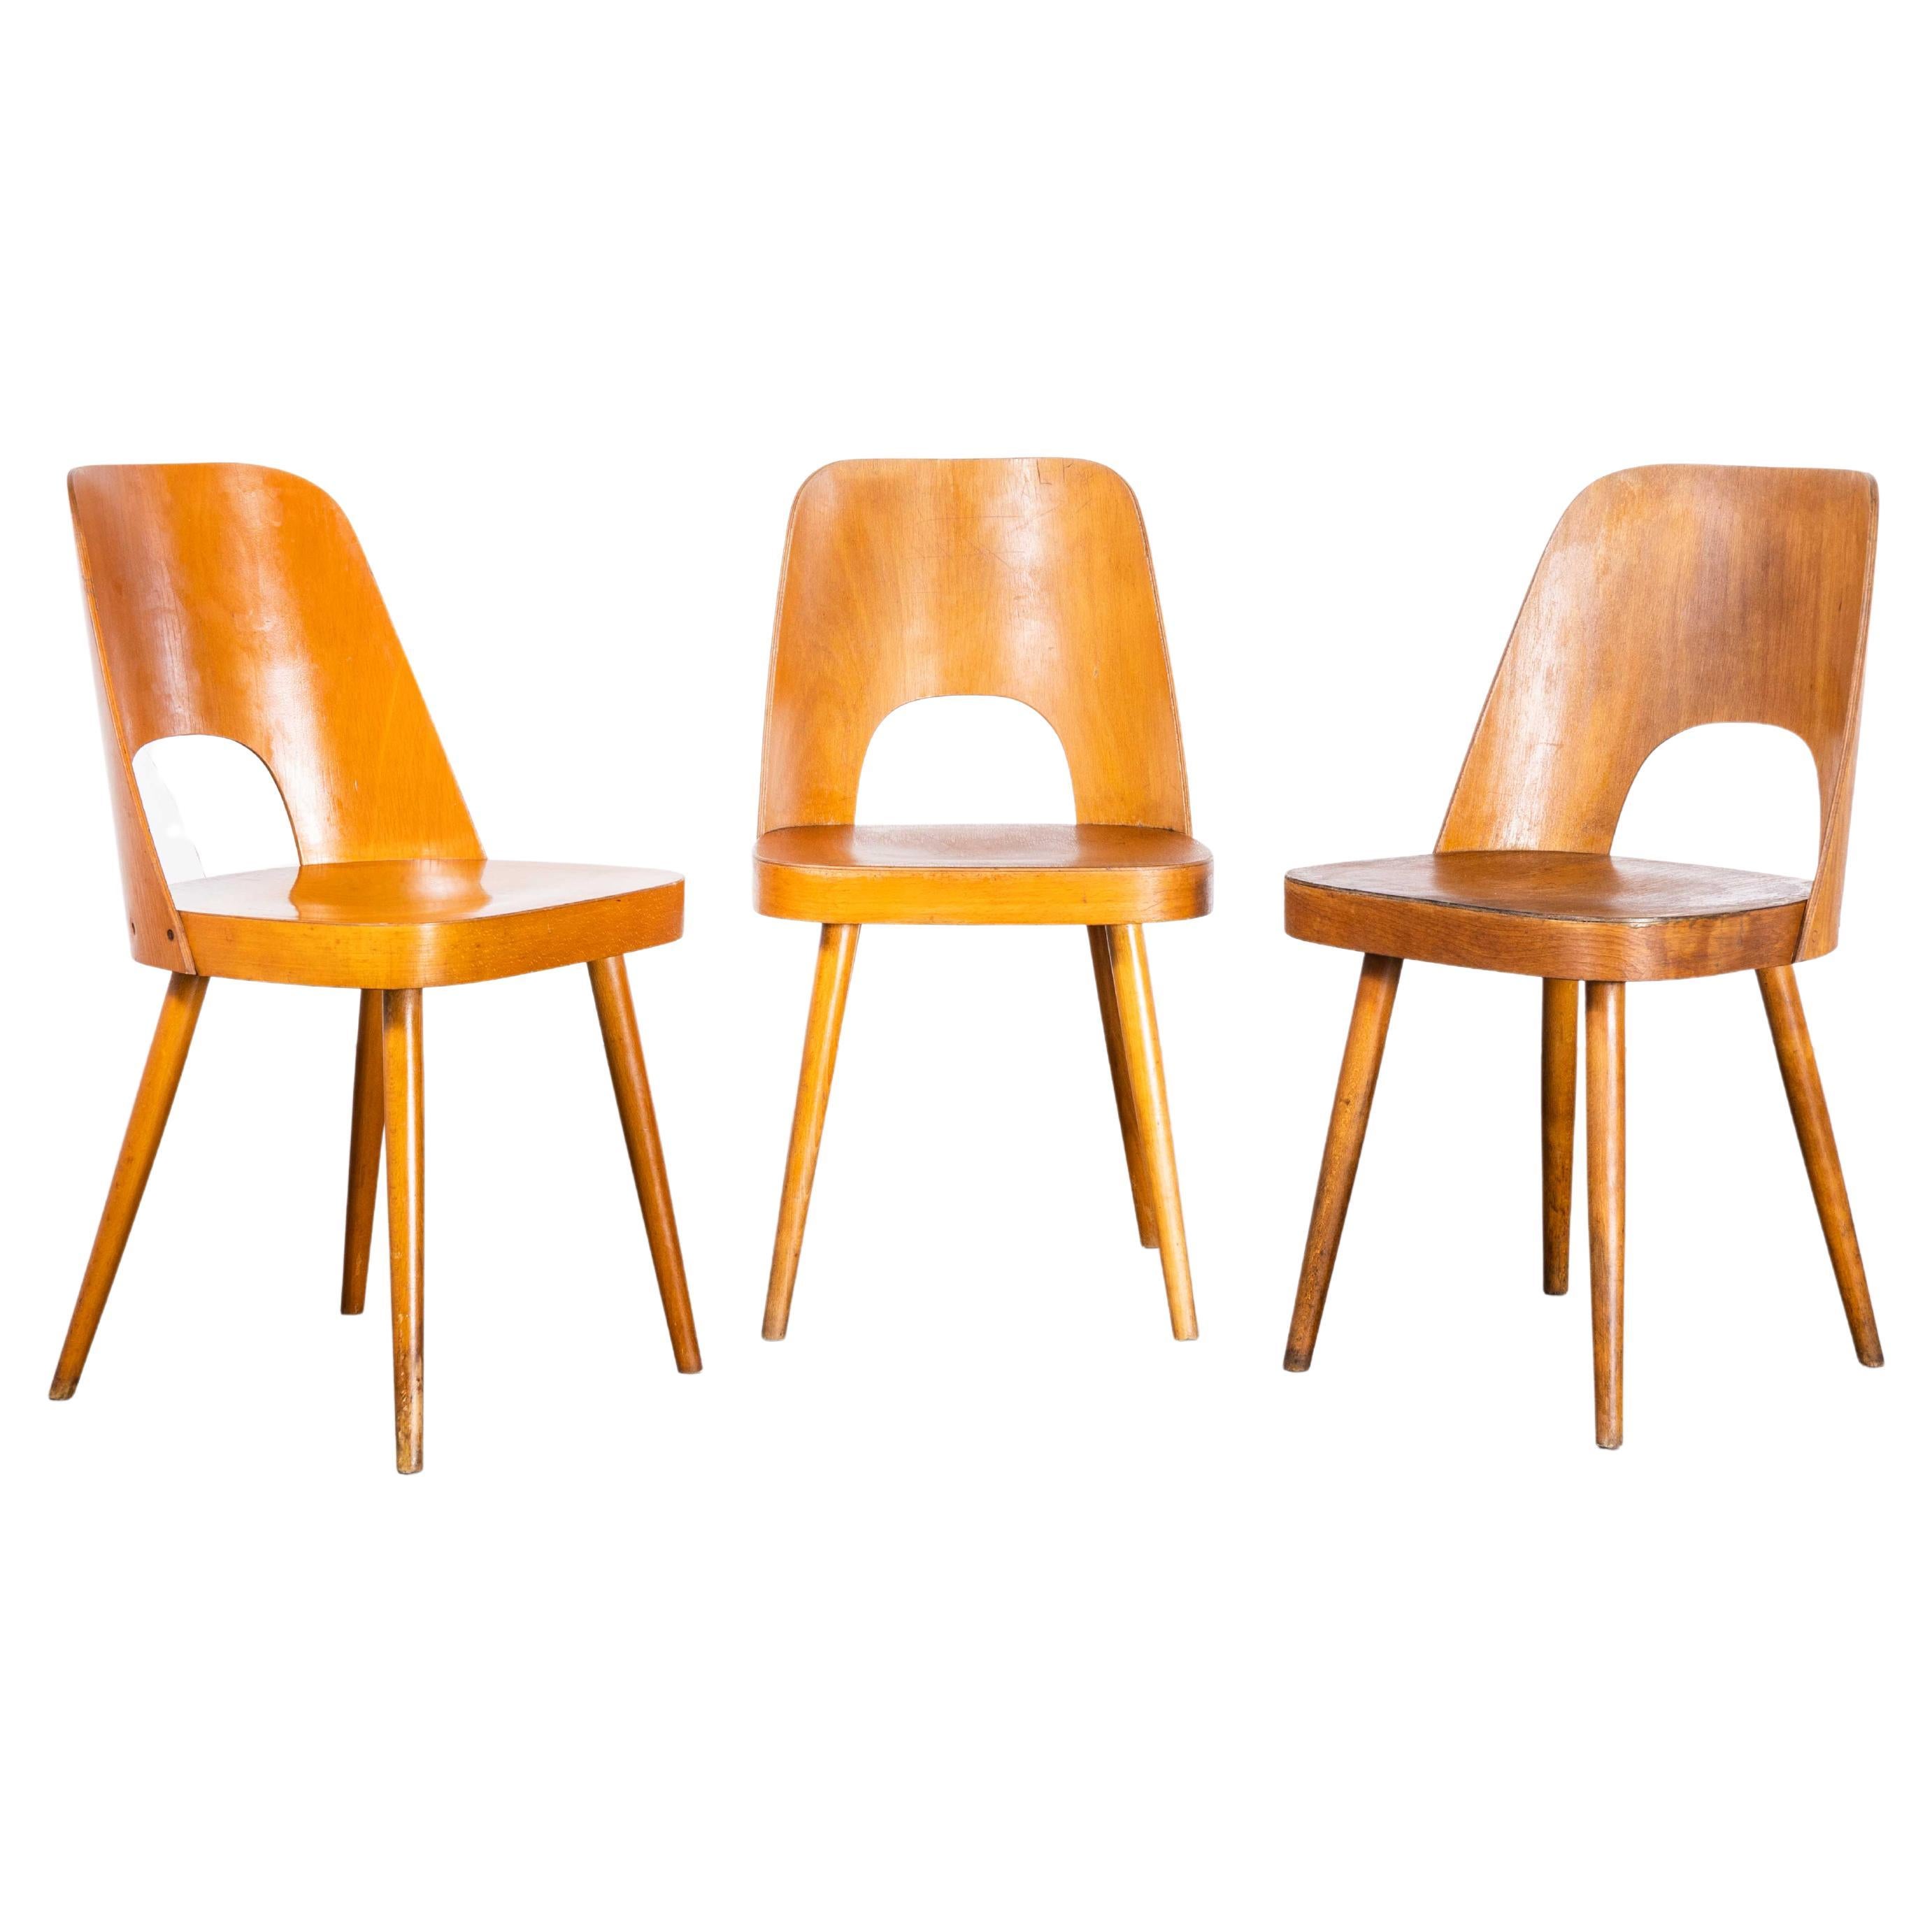 Beistellstühle aus honigfarbener Eiche aus den 1950er Jahren – Oswald Haerdtl Modell515 – Dreier-Set